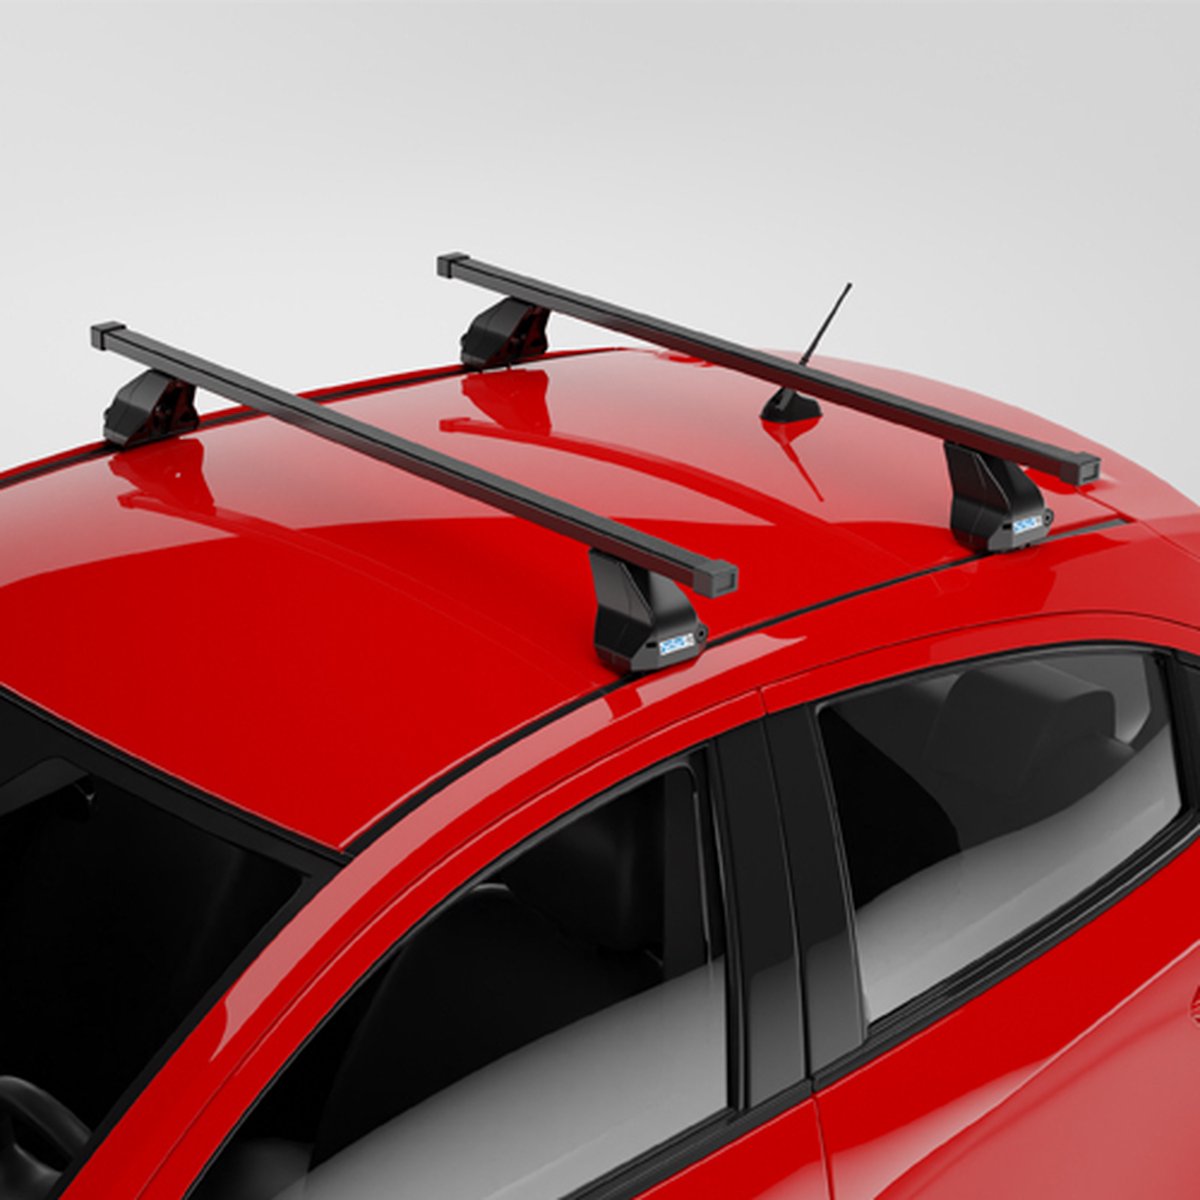 Dakdragers geschikt voor Subaru Impreza 5 deurs hatchback vanaf 2016